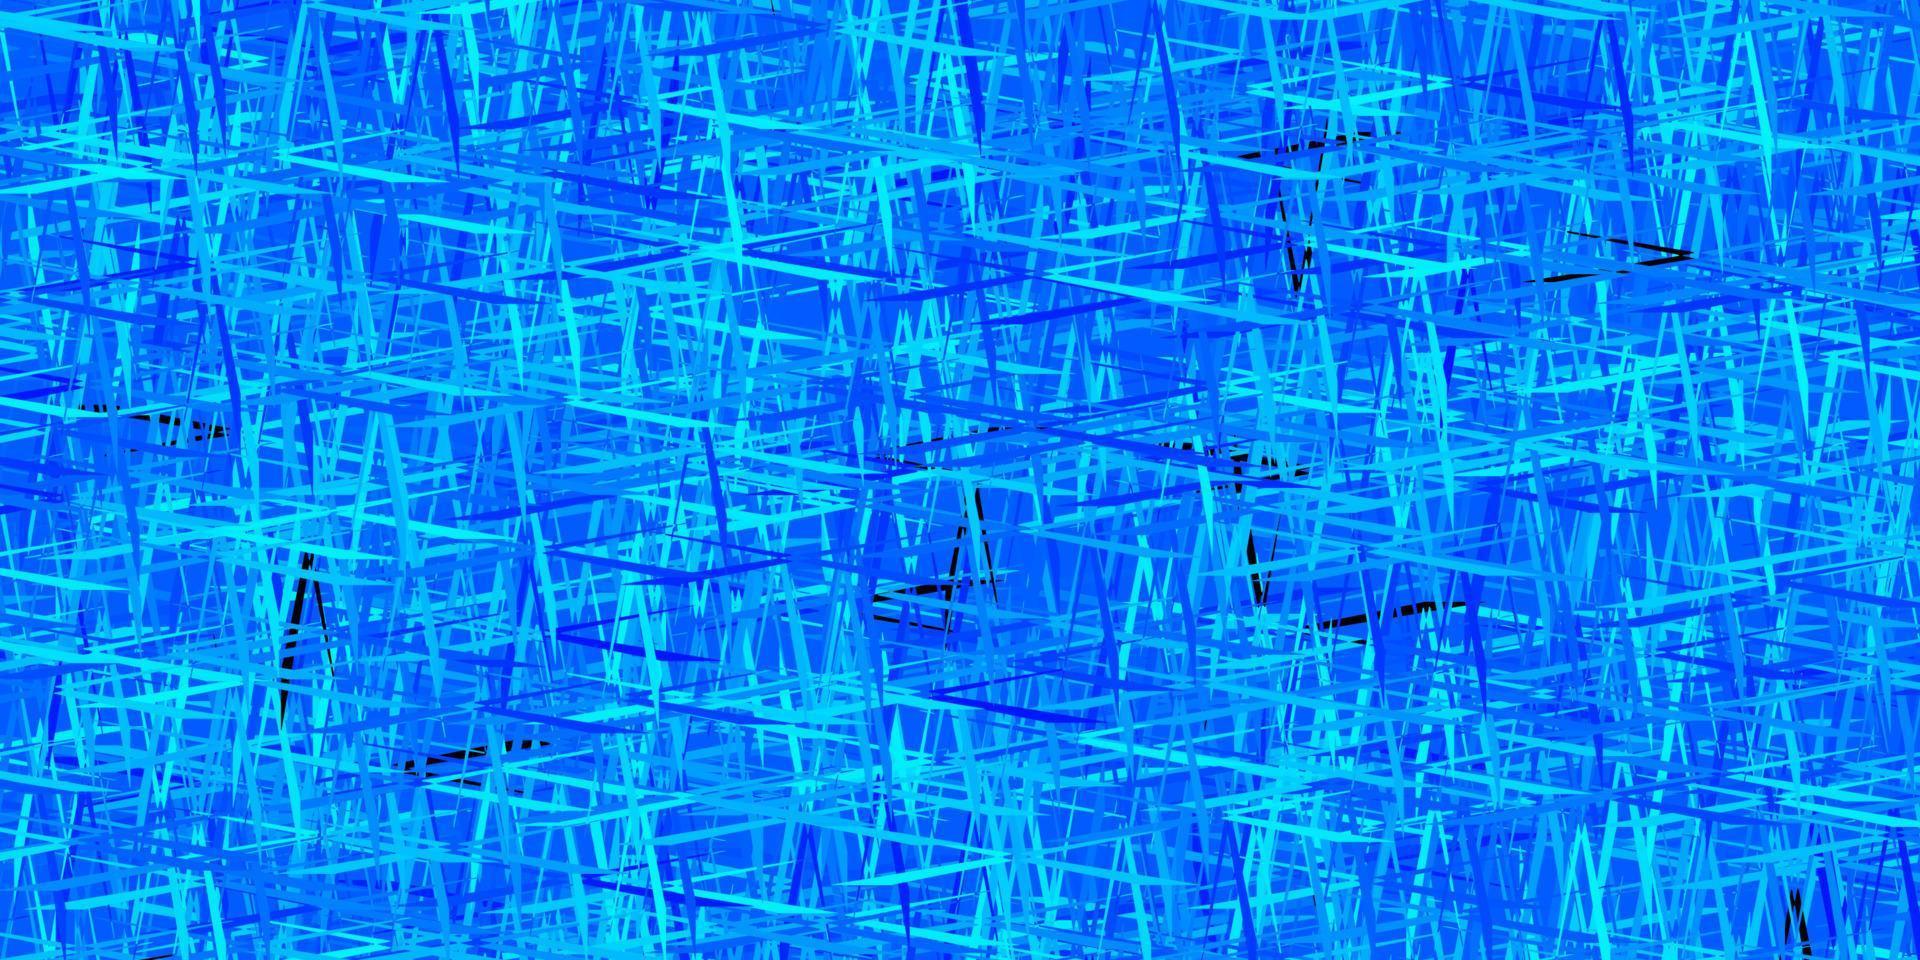 plantilla de vector azul oscuro con palos repetidos.